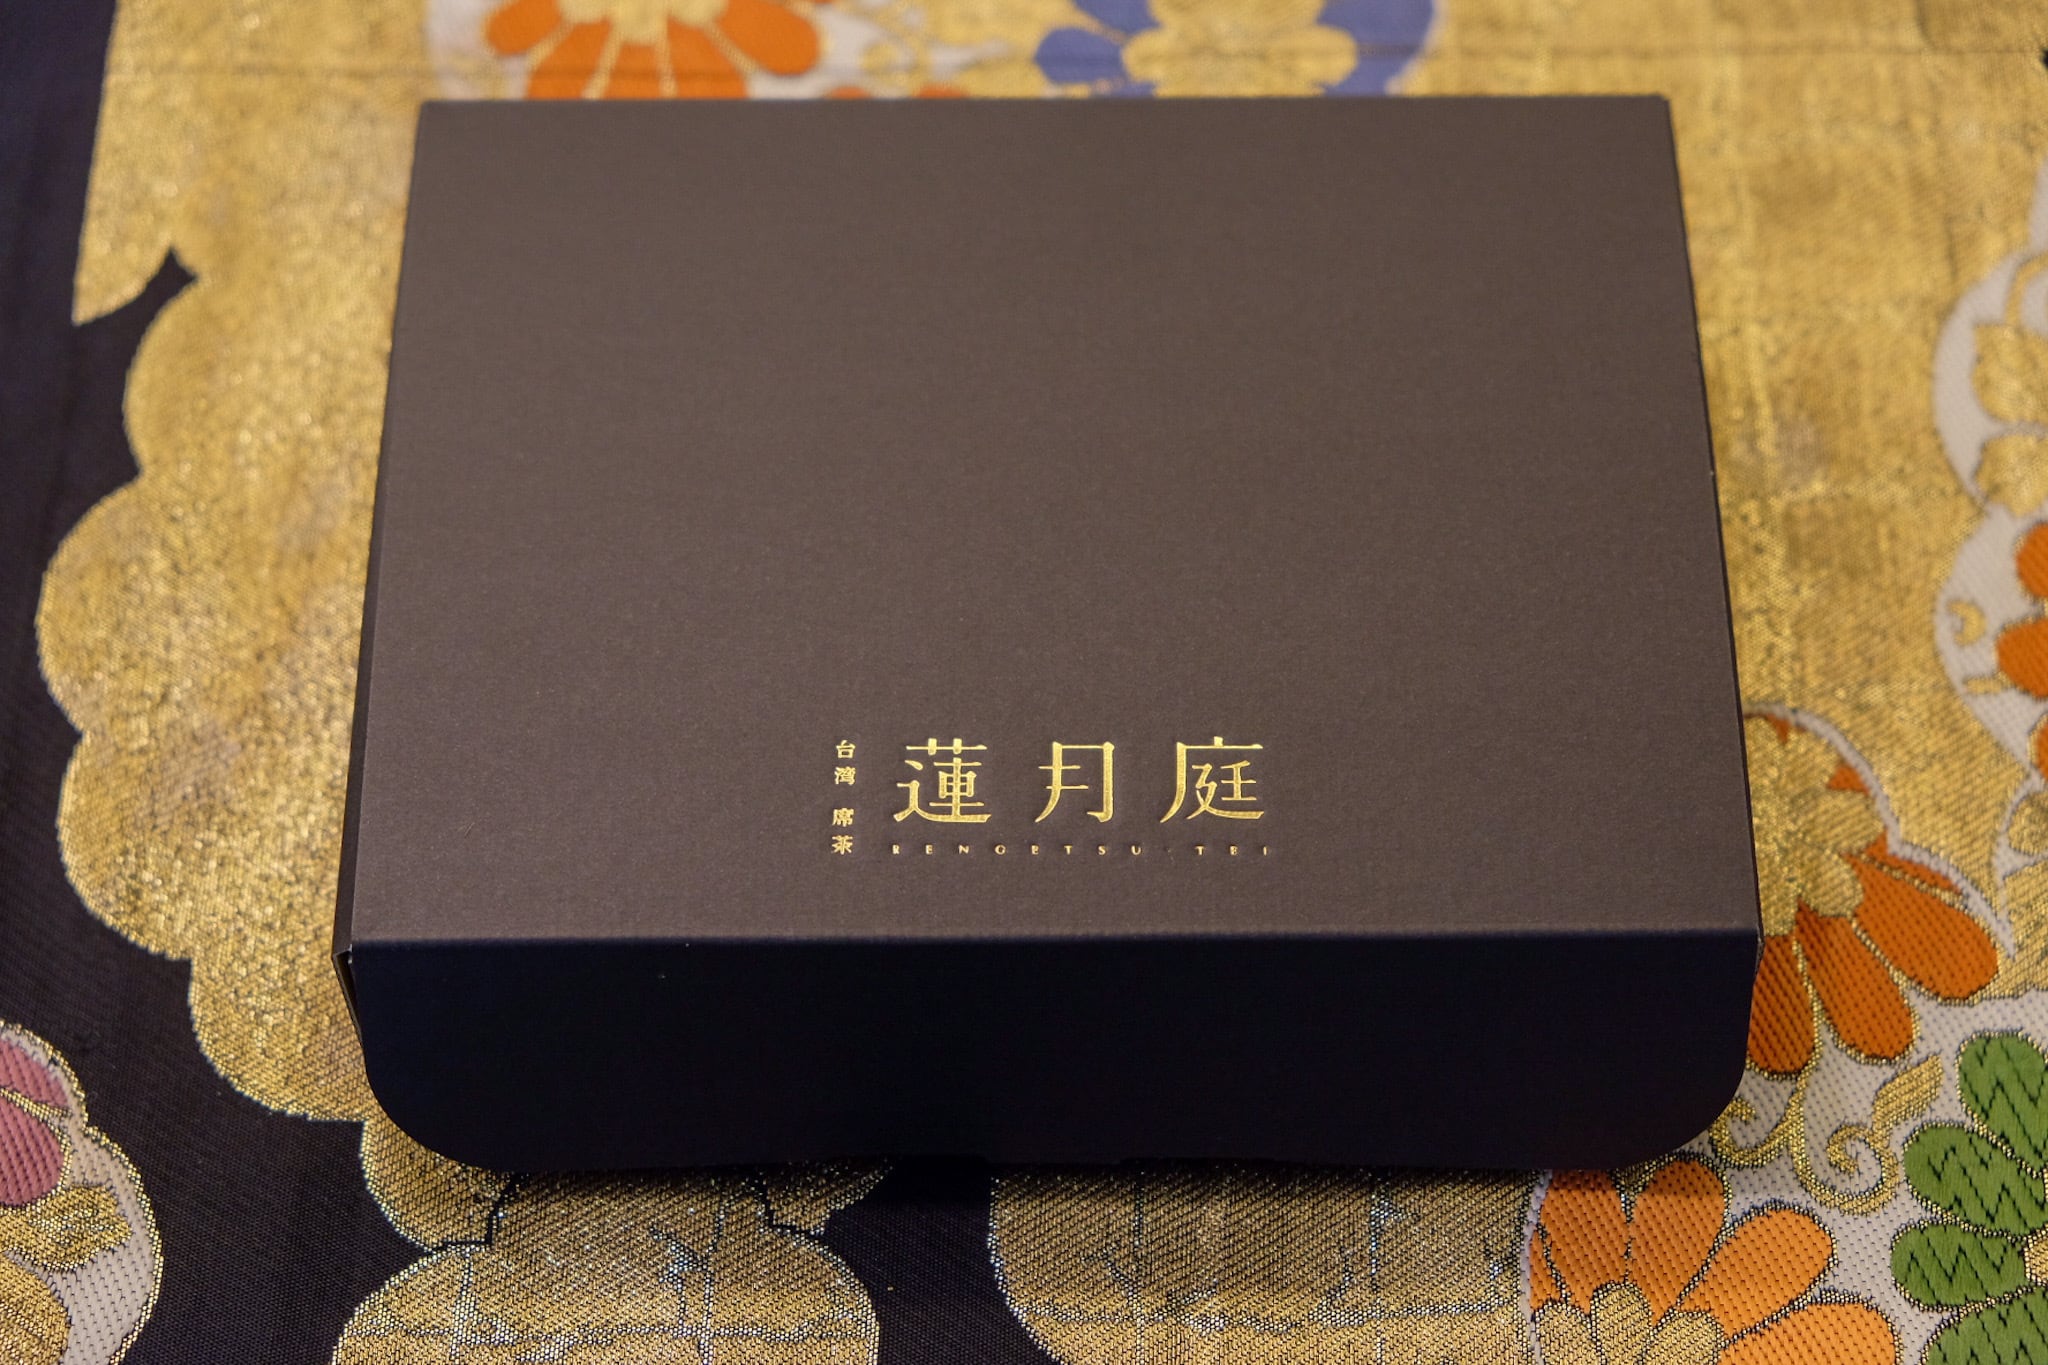 三種の蓮月庭パイナップルケーキ 6個セット 【蓮月庭オリジナル箱入り】